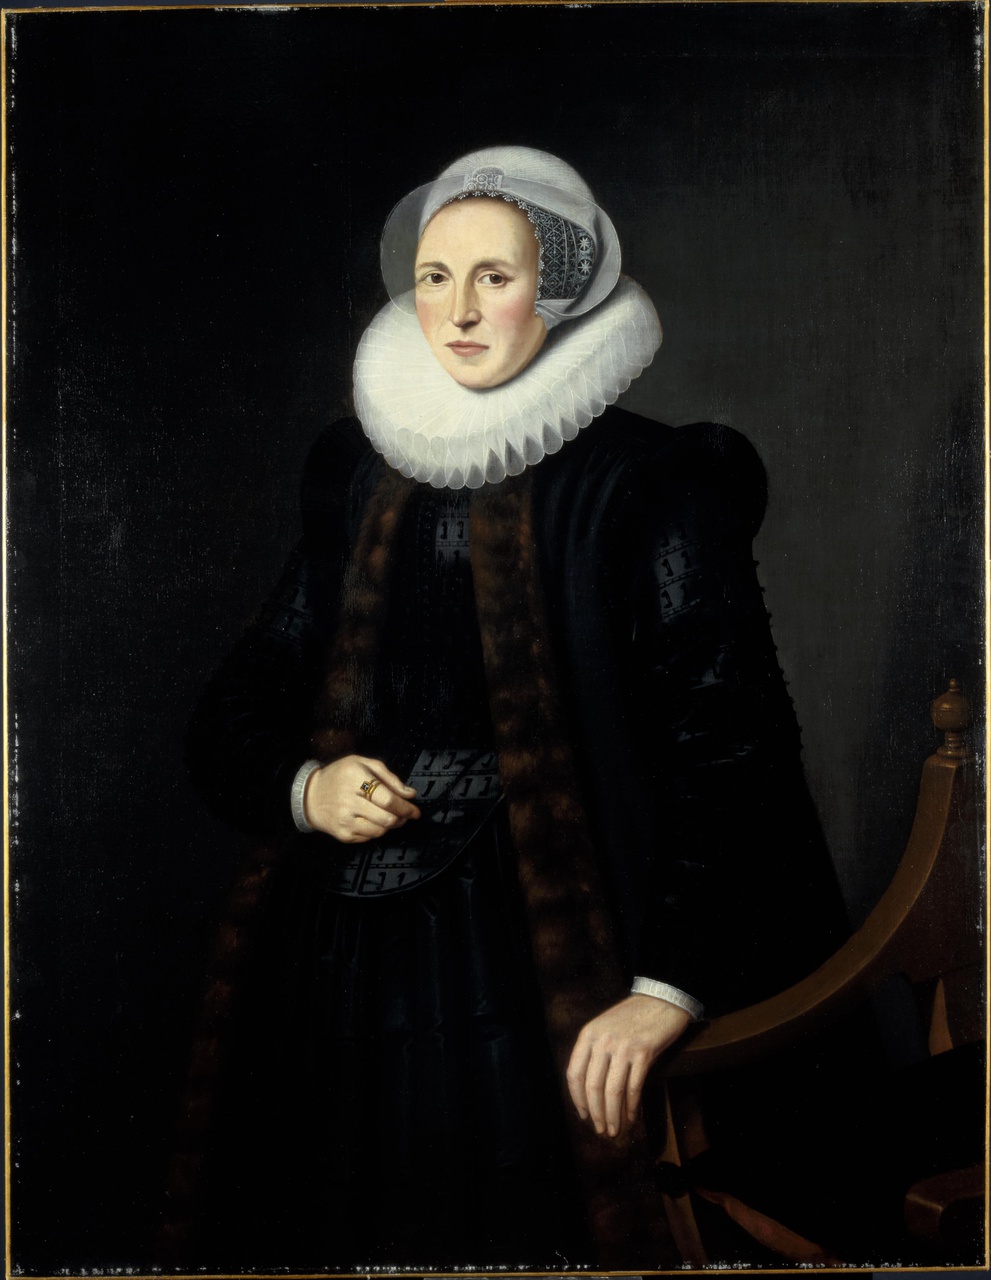 Portret van Mayken Baccher (1565-1612), echtgenote van Hans Martens